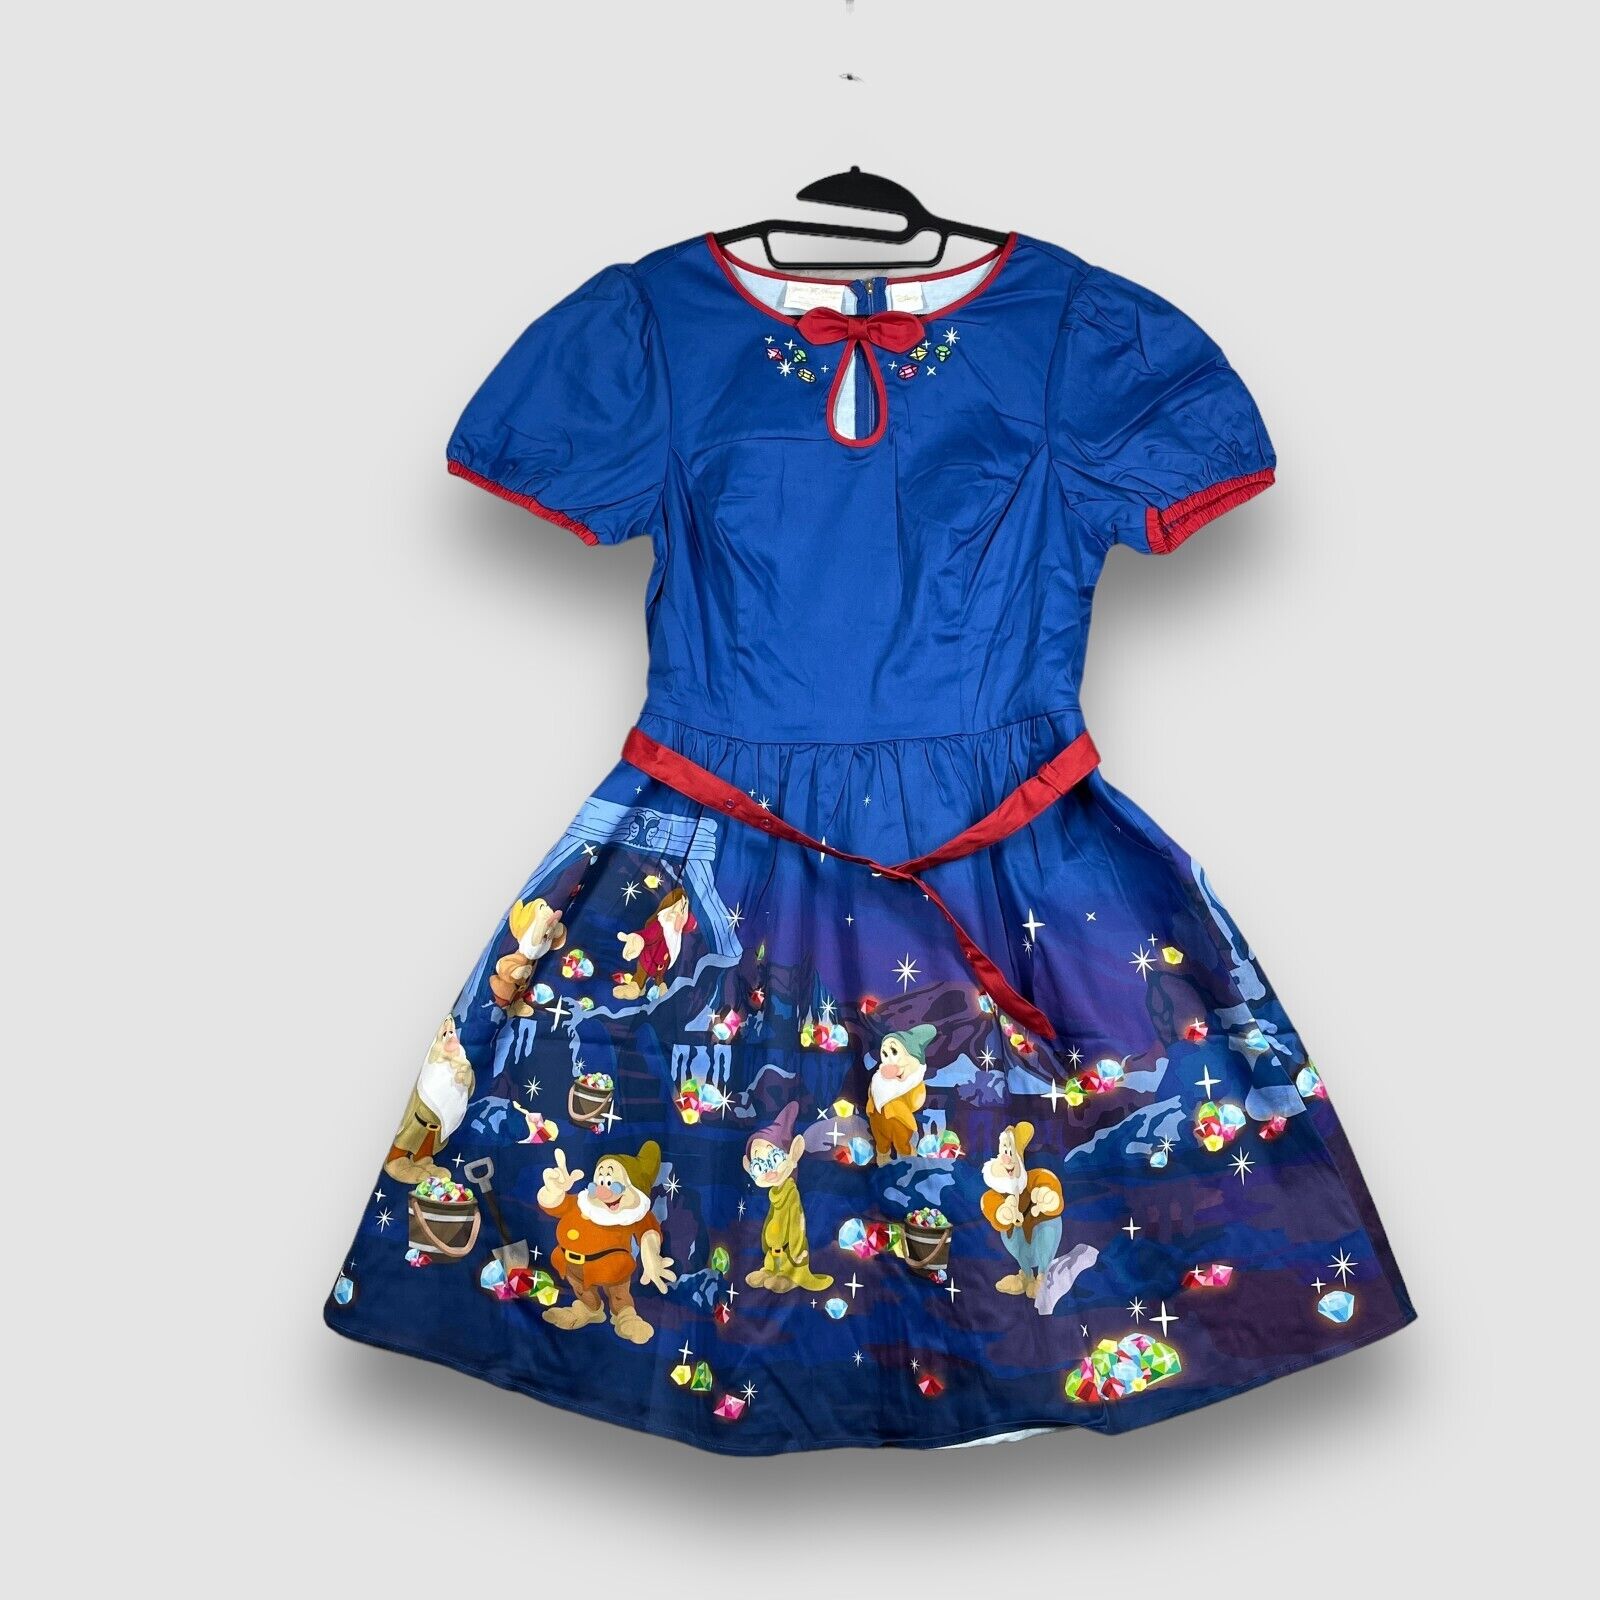 Disney Loungefly Stitch Shoppe Womens XL Snow White 7 Dwarves Jewels Dress NWT